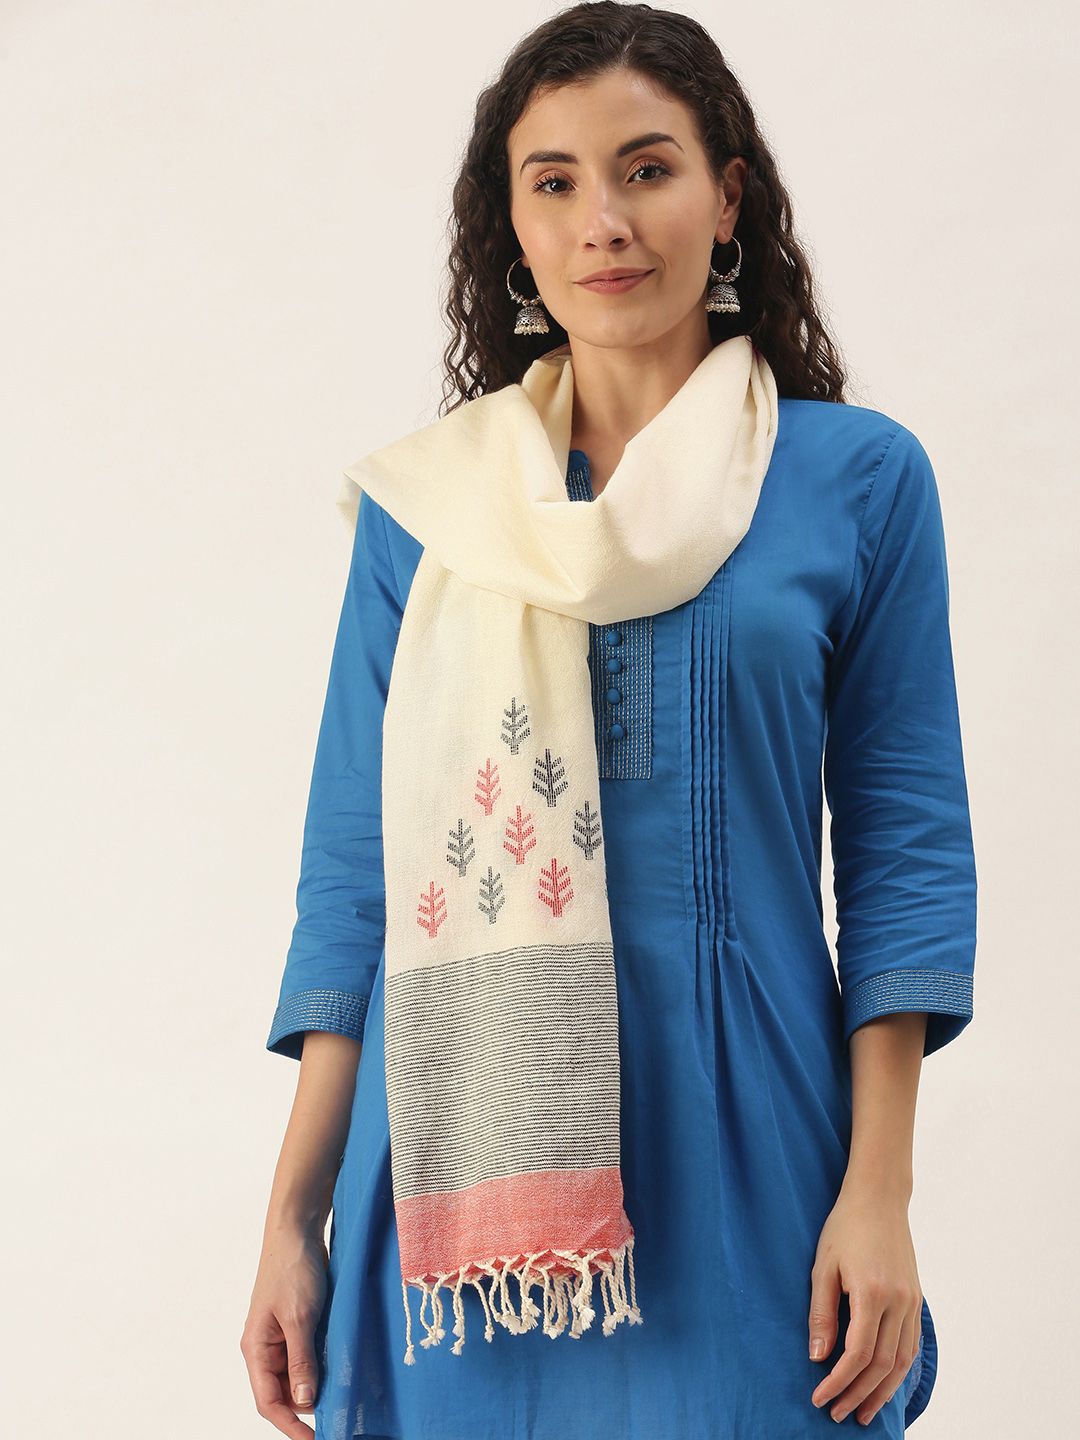 Women's Off- White & Red Handloom Merino Wool Jamdani Stole Price in India